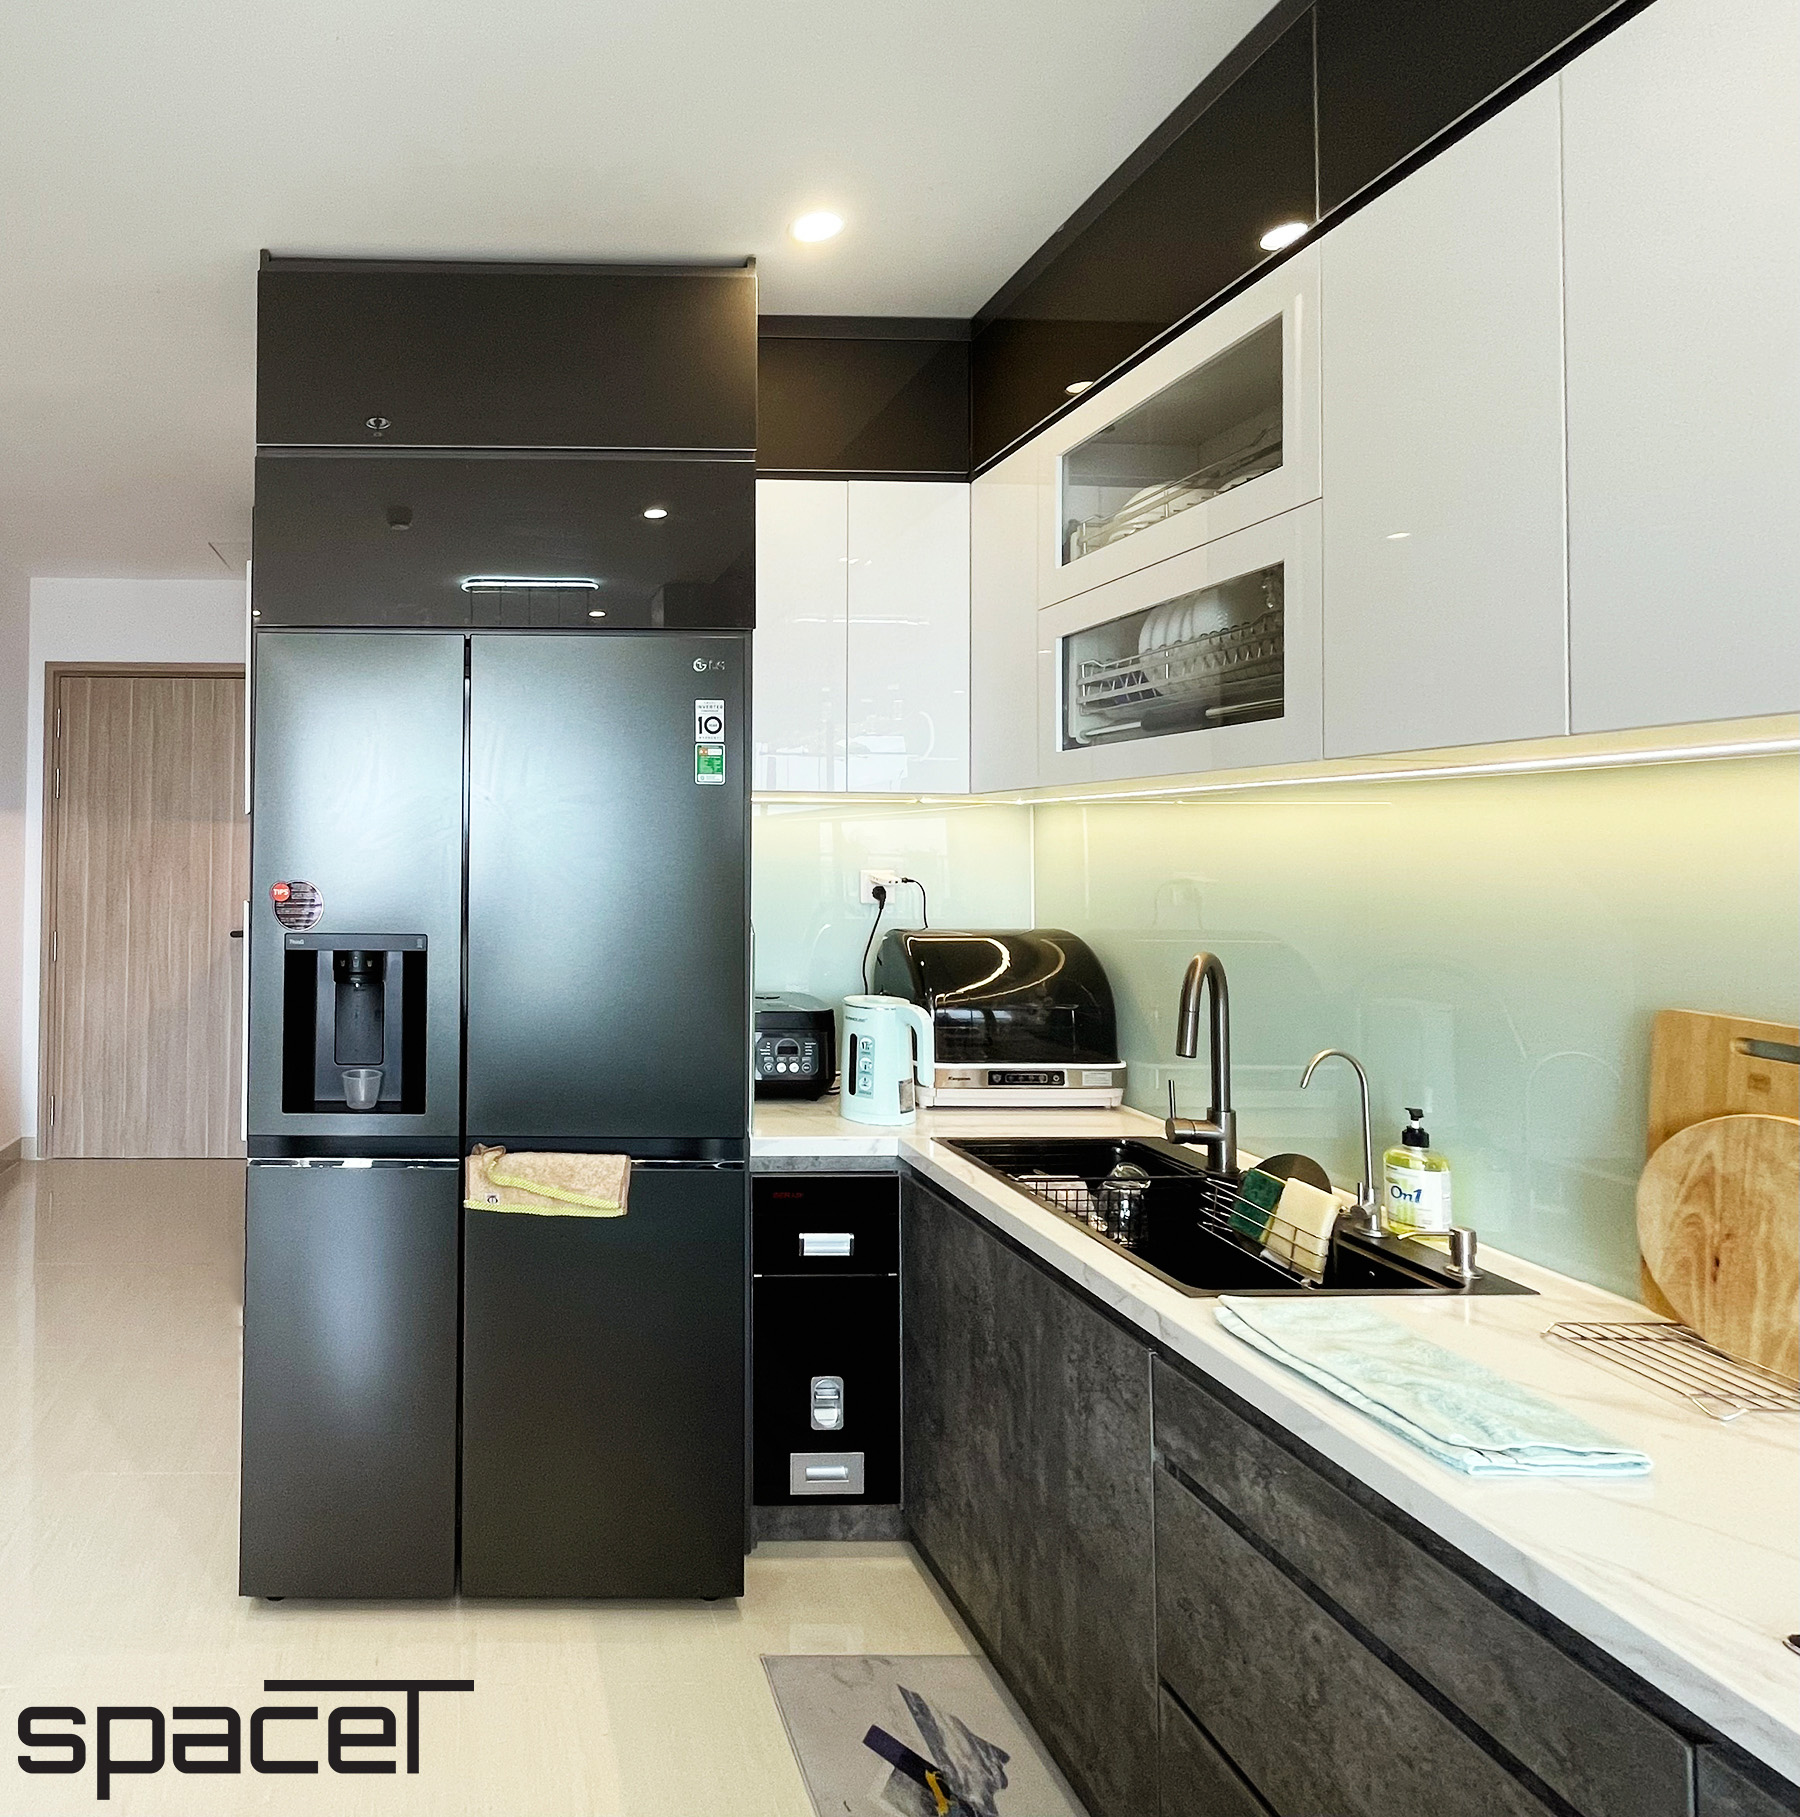 Phòng bếp, phong cách Hiện đại Modern, hoàn thiện nội thất, căn hộ The Origami Vinhomes Quận 9